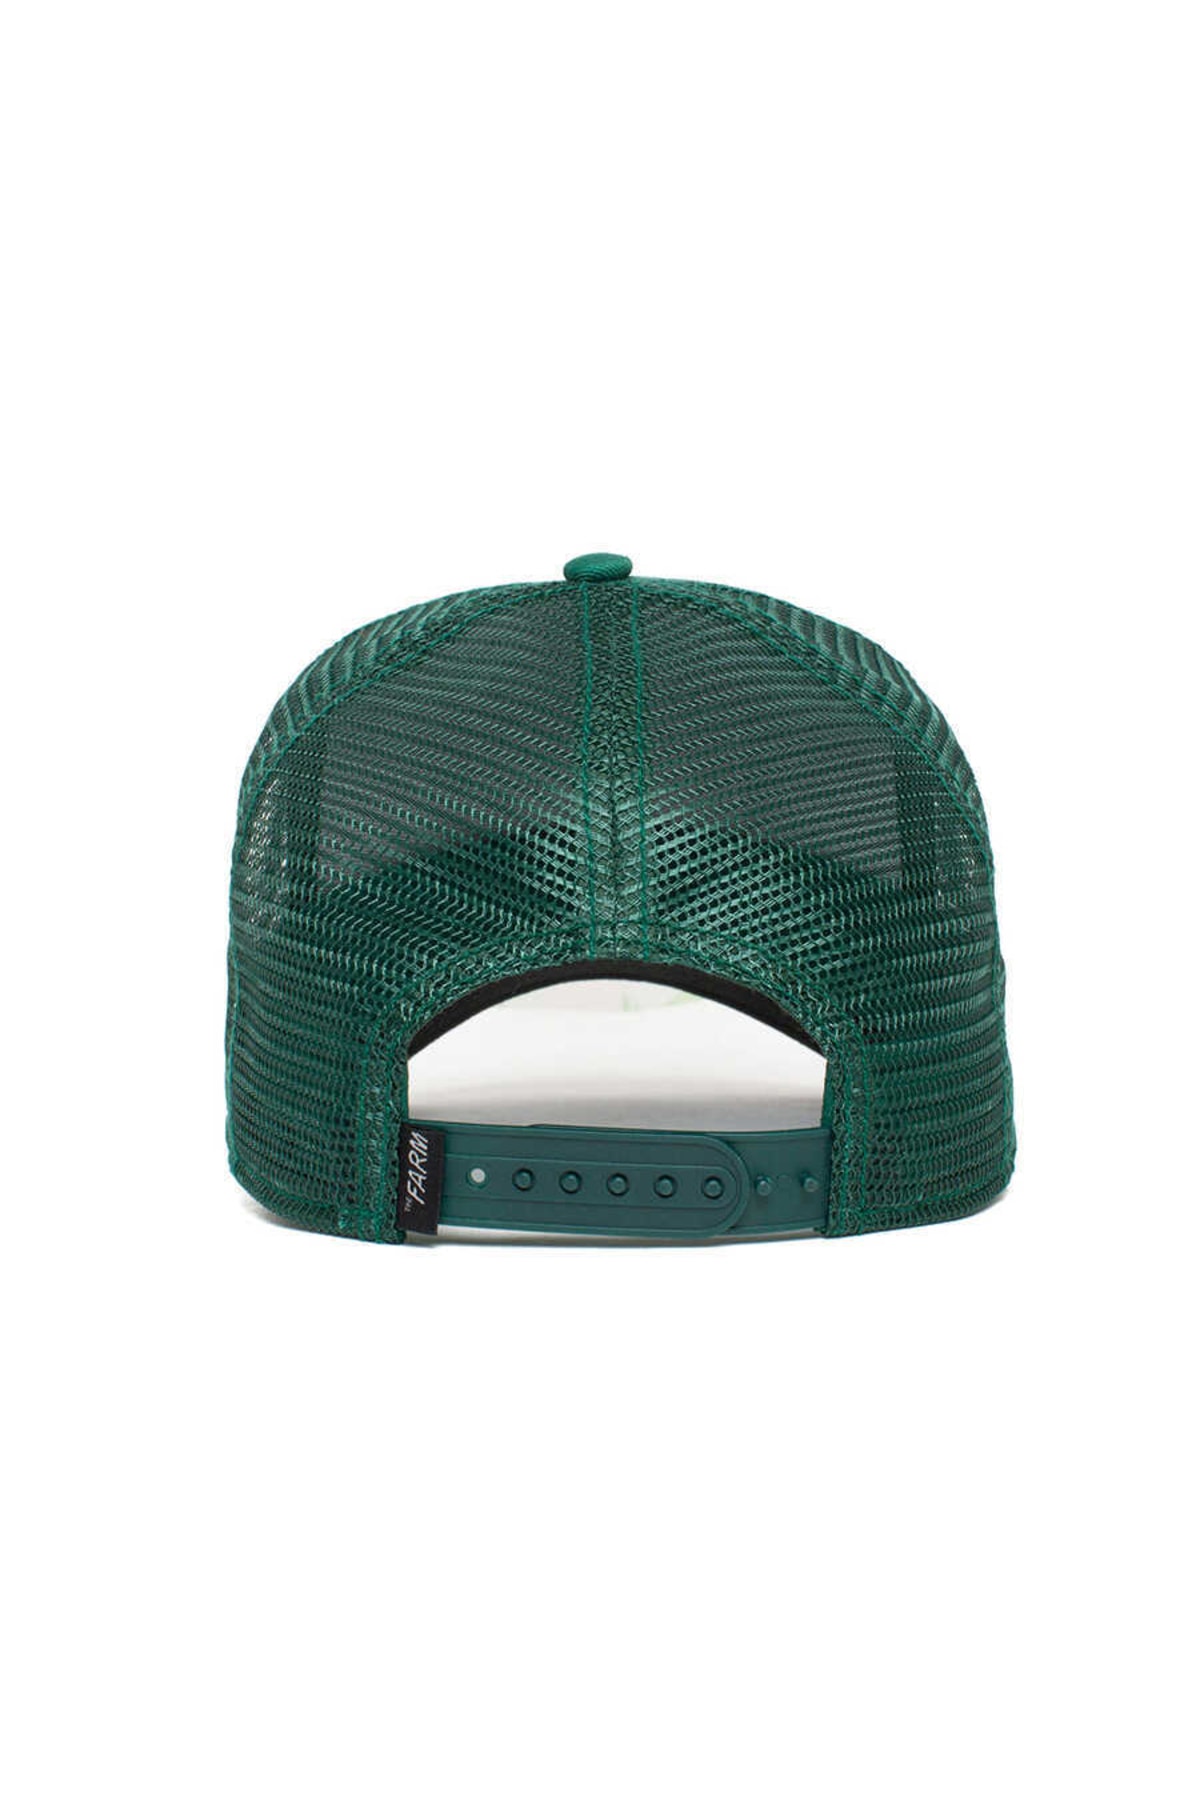 Goorin Bros پلنگ (شکل پلنگ) کلاه یونیسکس 101-0381 استاندارد سبز